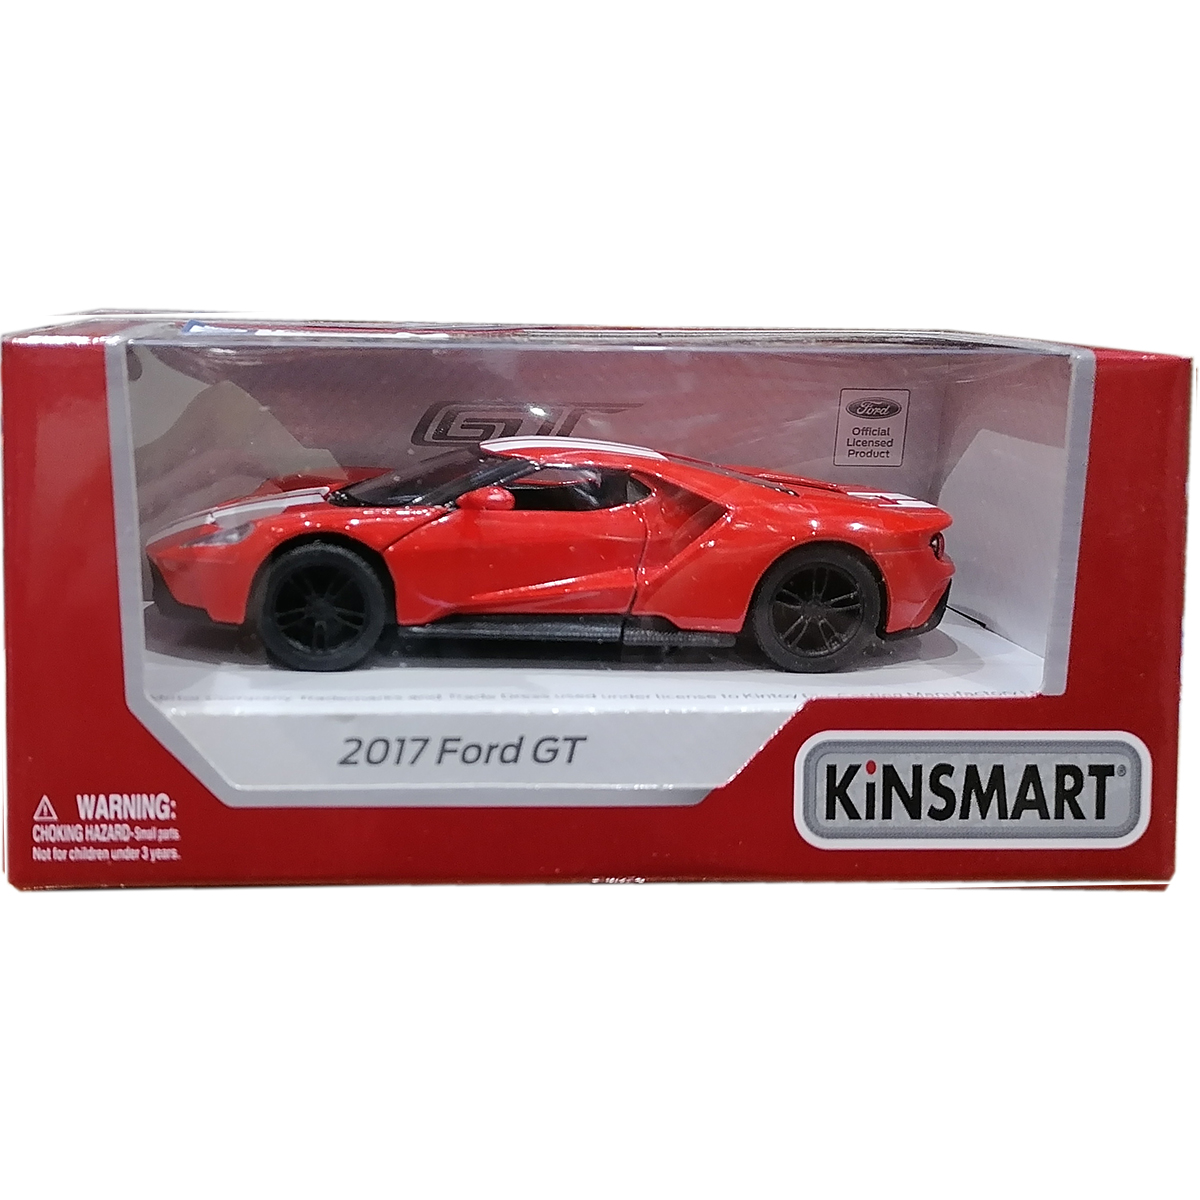 Masinuta din metal Kinsmart, Ford GT 2017, Rosu